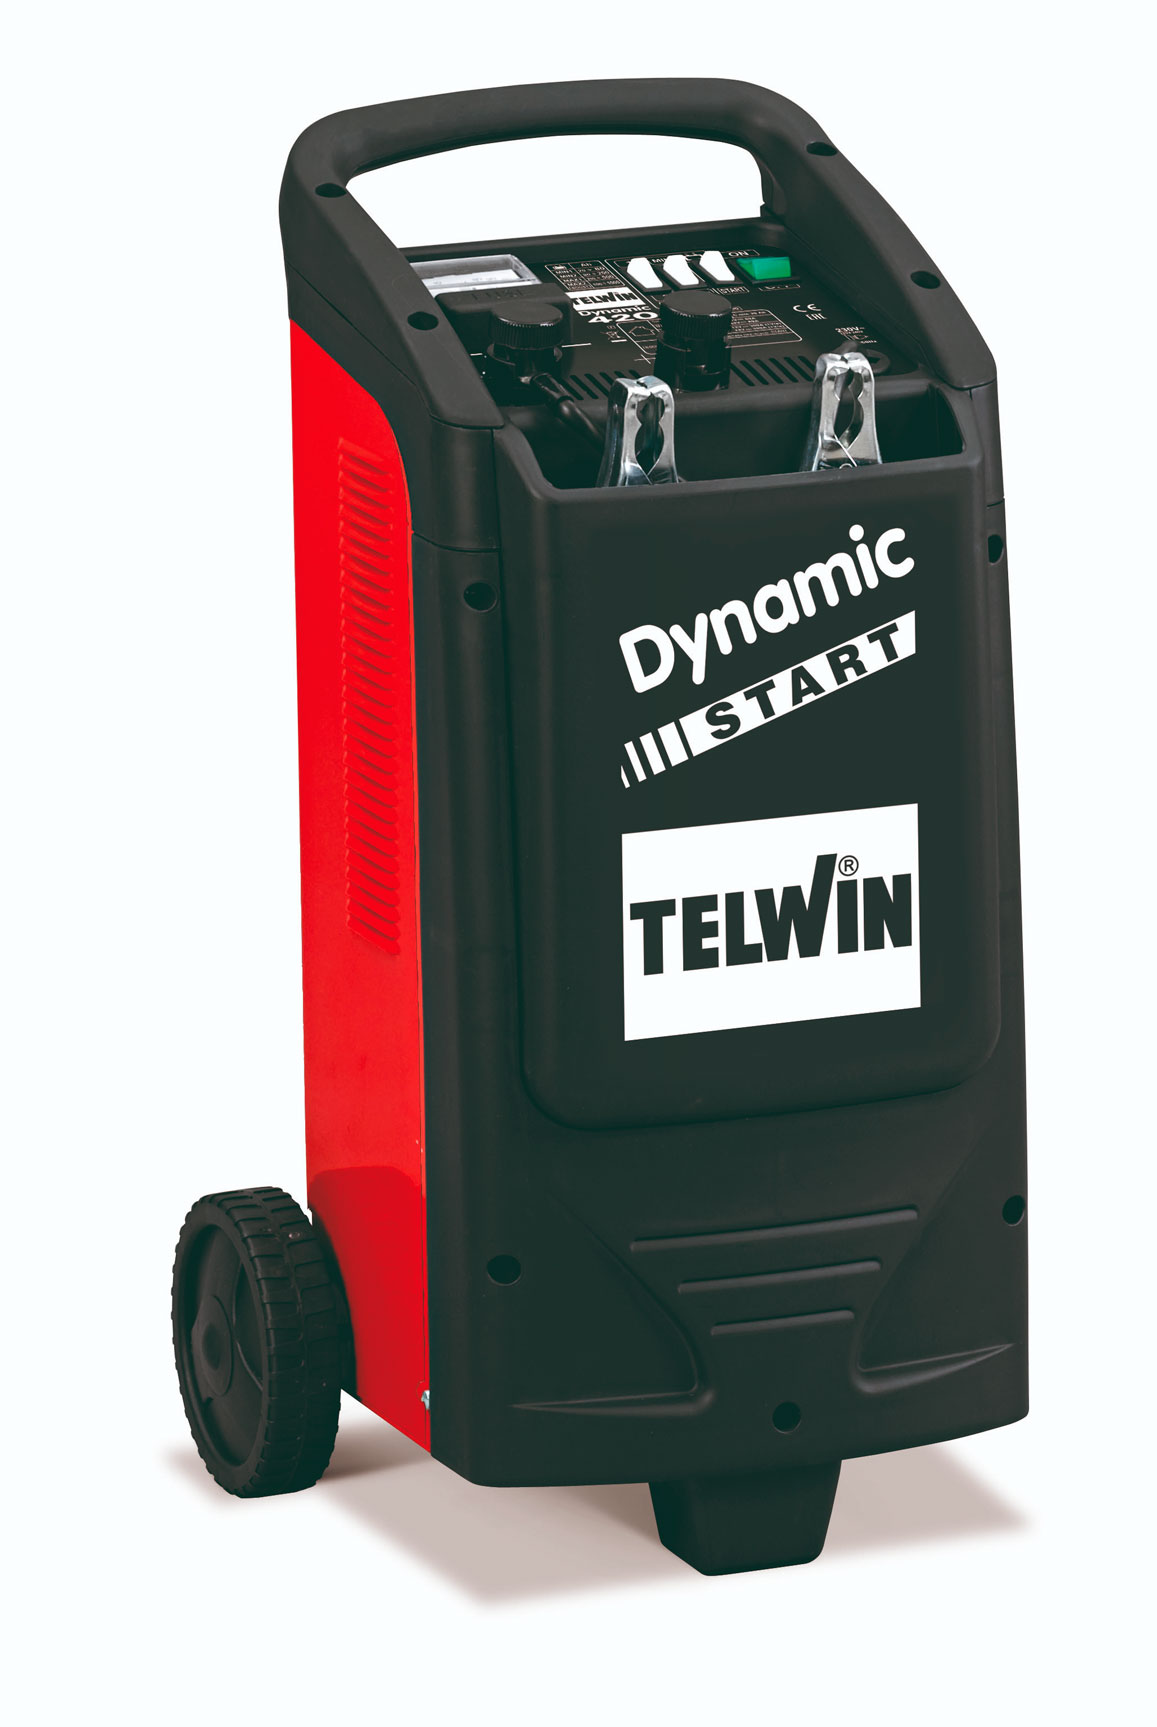 -  Telwin Dynamic 420 Start